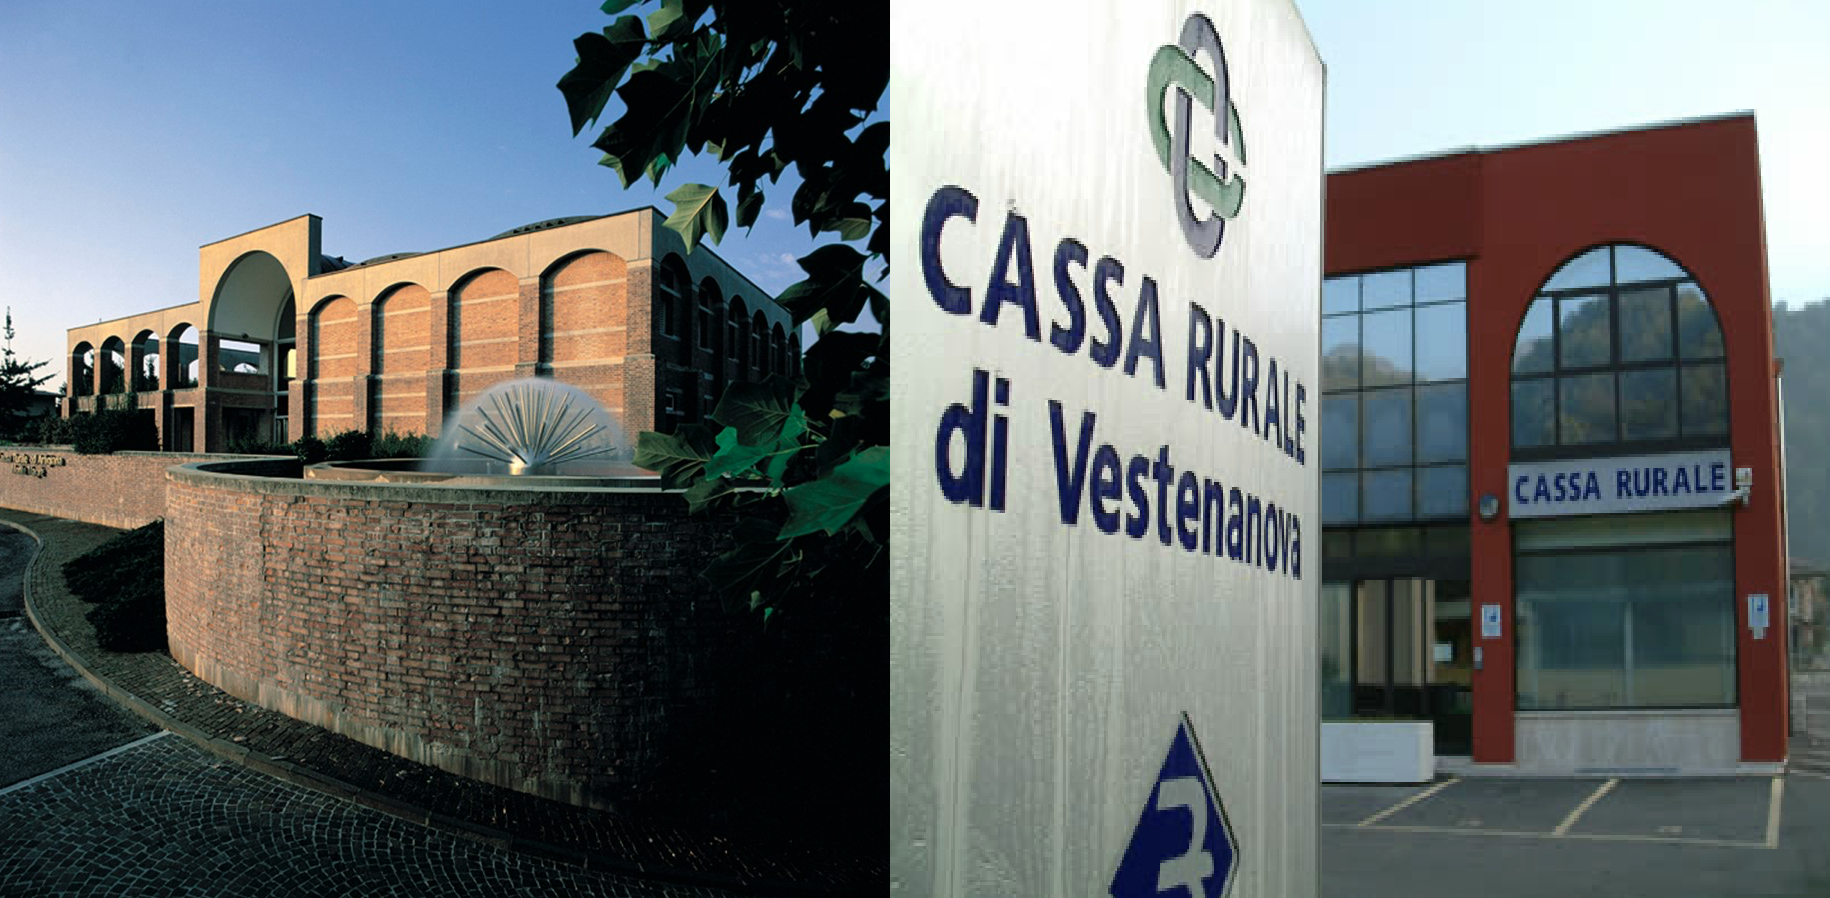 BCC, dal primo luglio operativa la fusione fra Veneto Centrale e Venete Riunite (ex Vestenanova)